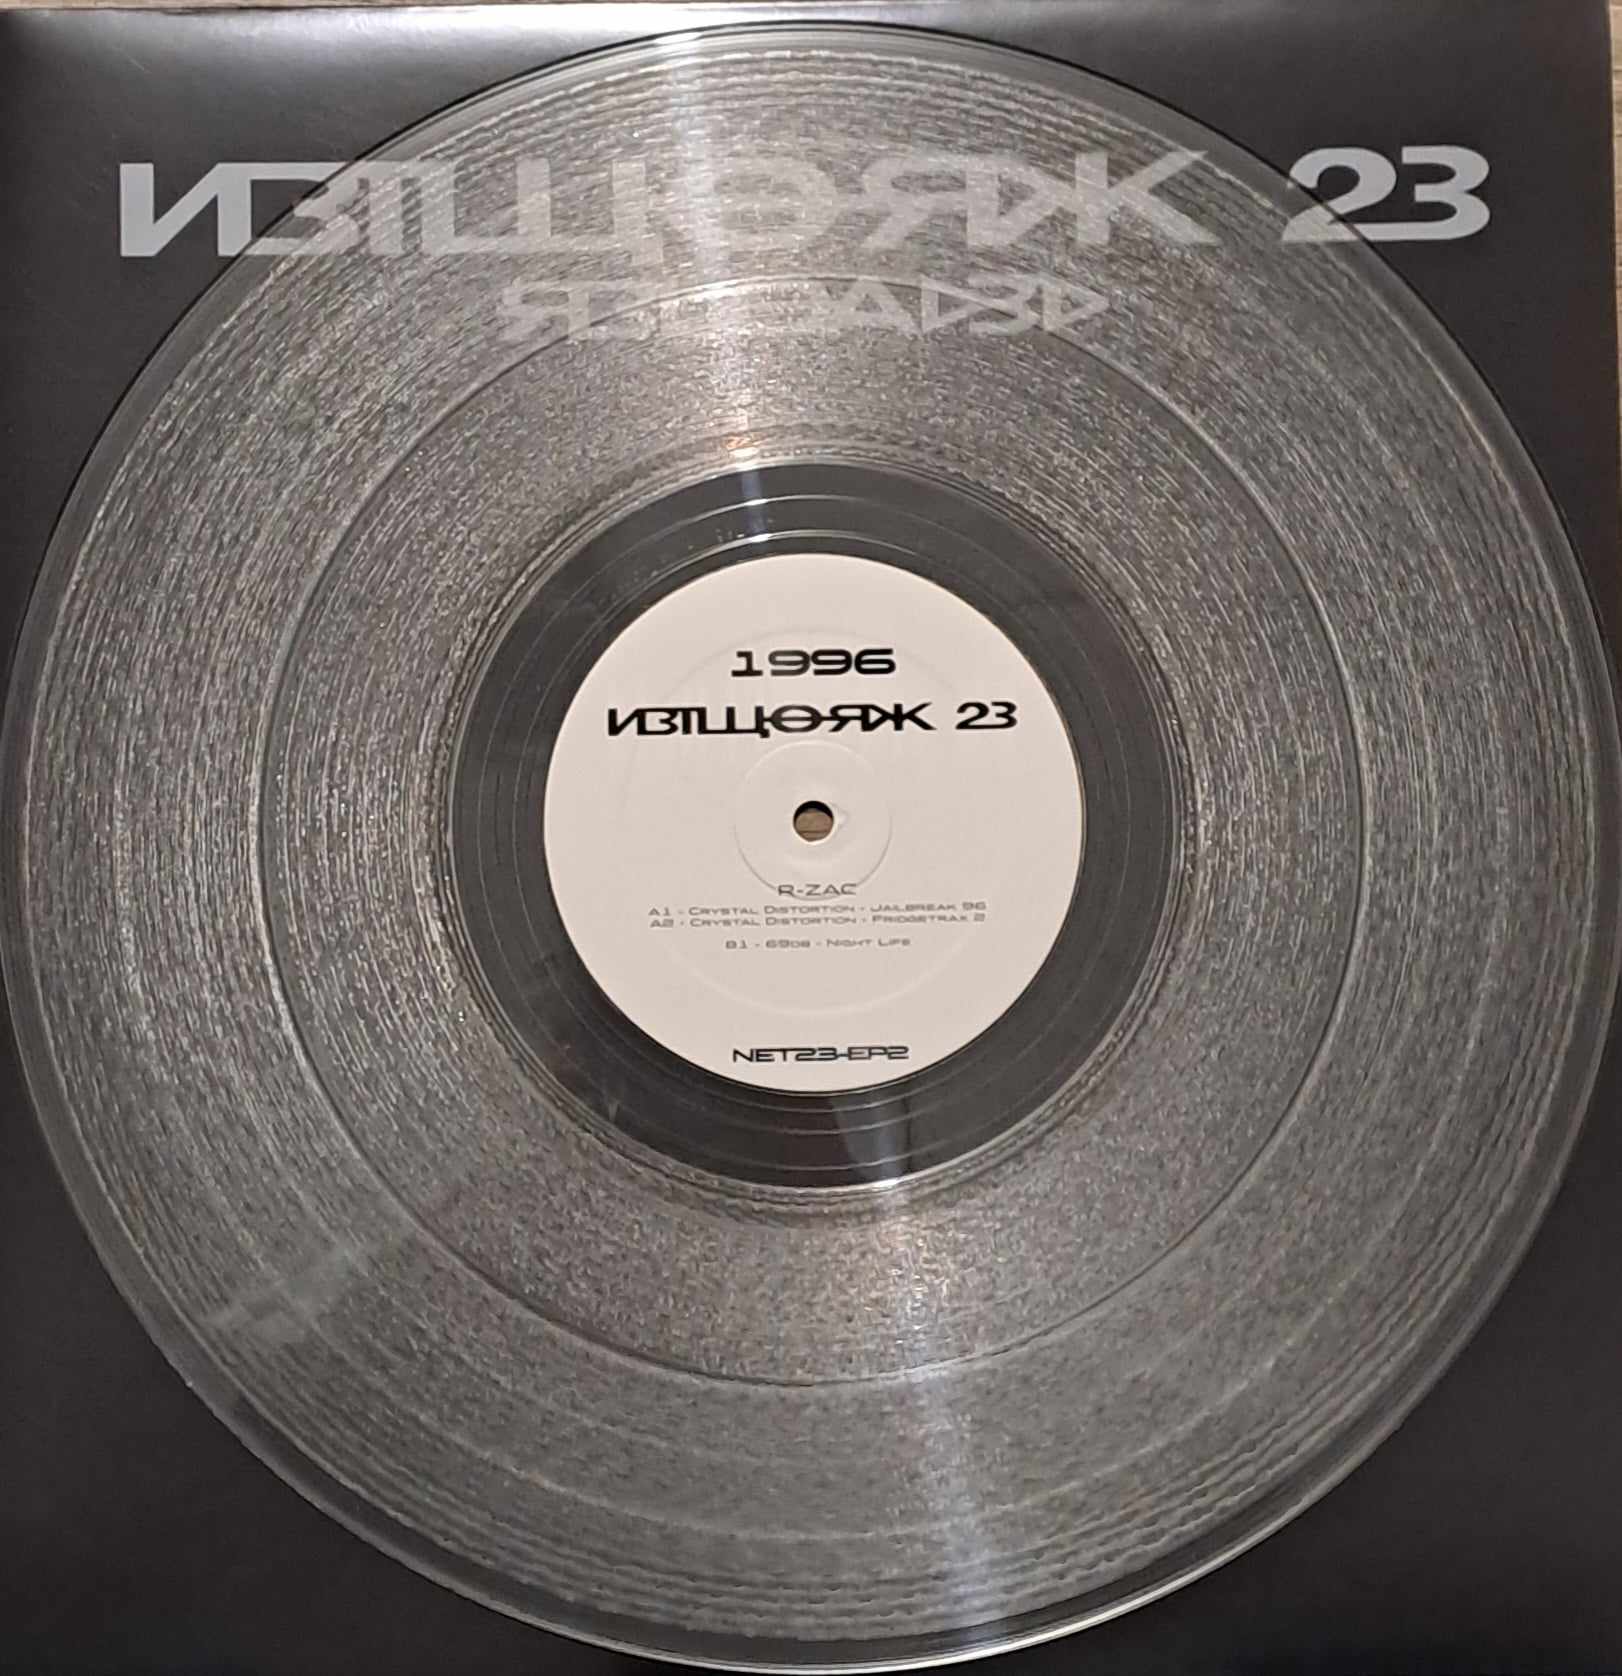 Network23 EP 02 (toute dernière copie en stock) - vinyle freetekno